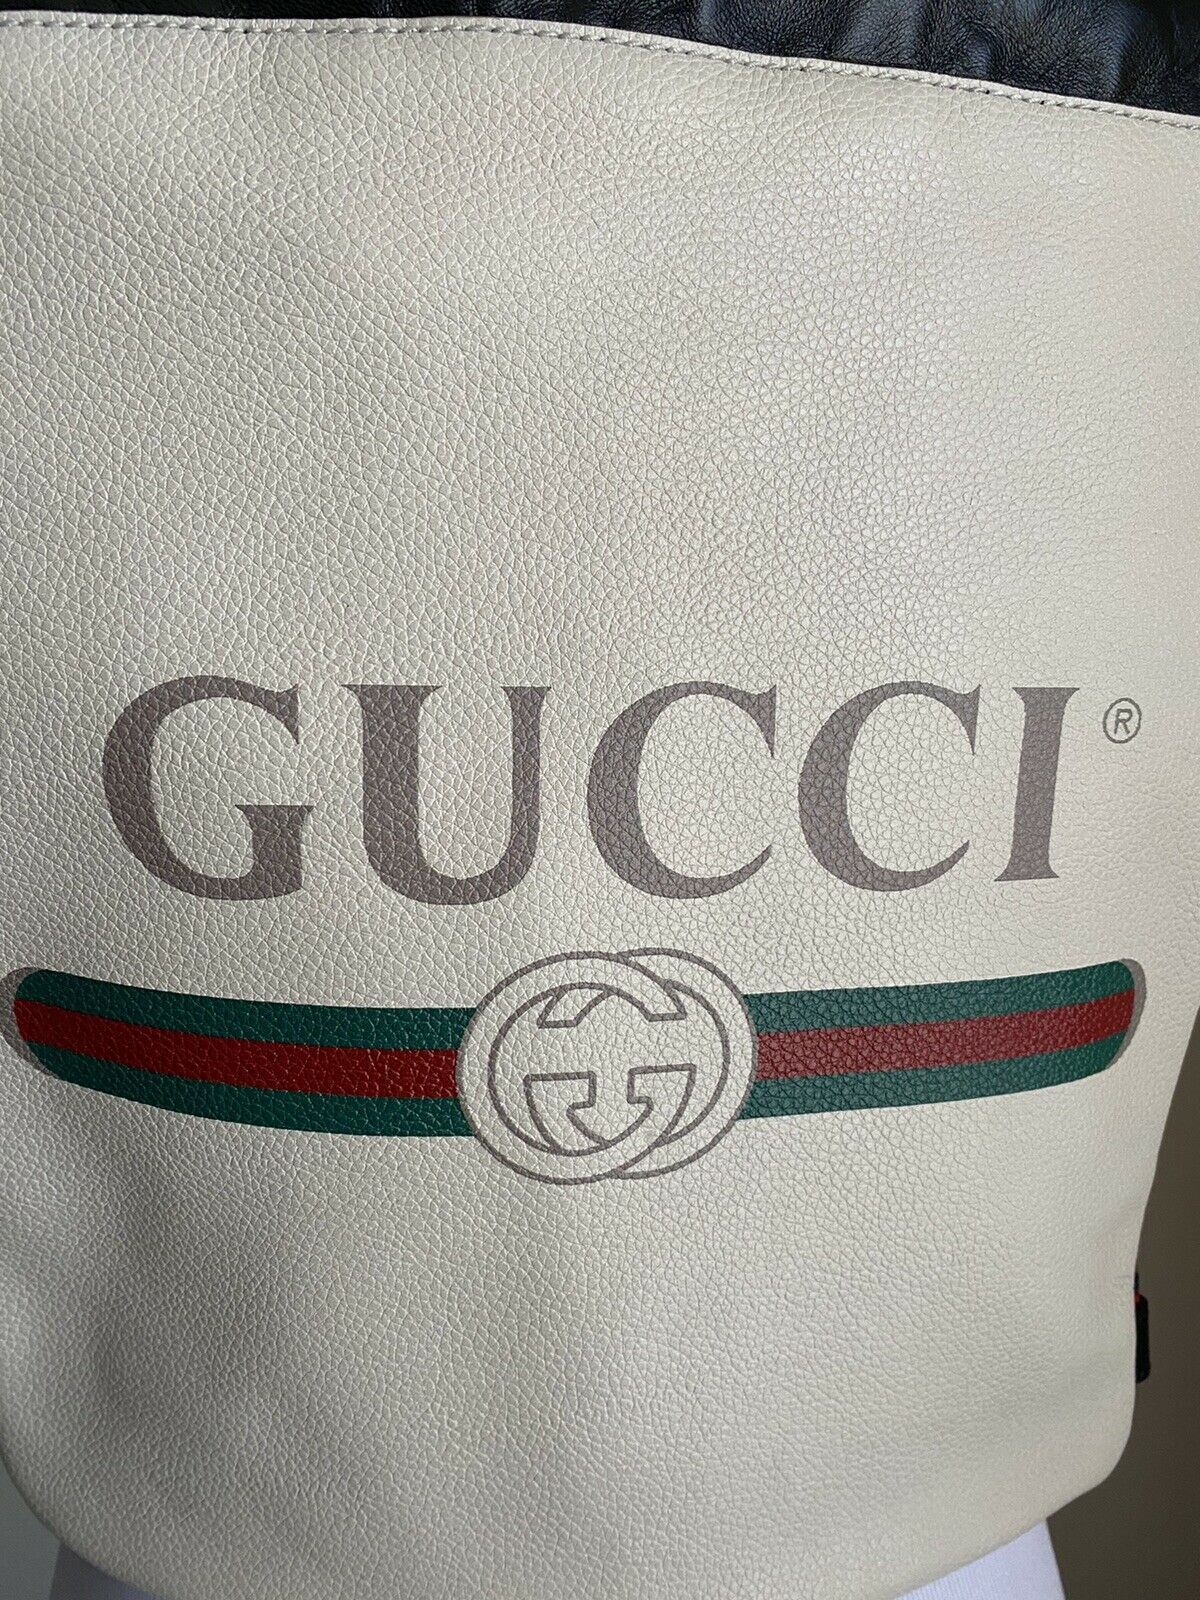 New Кожаный Рюкзак Gucci GG Monogram Желто-коричневый/Черный 523586 Италия